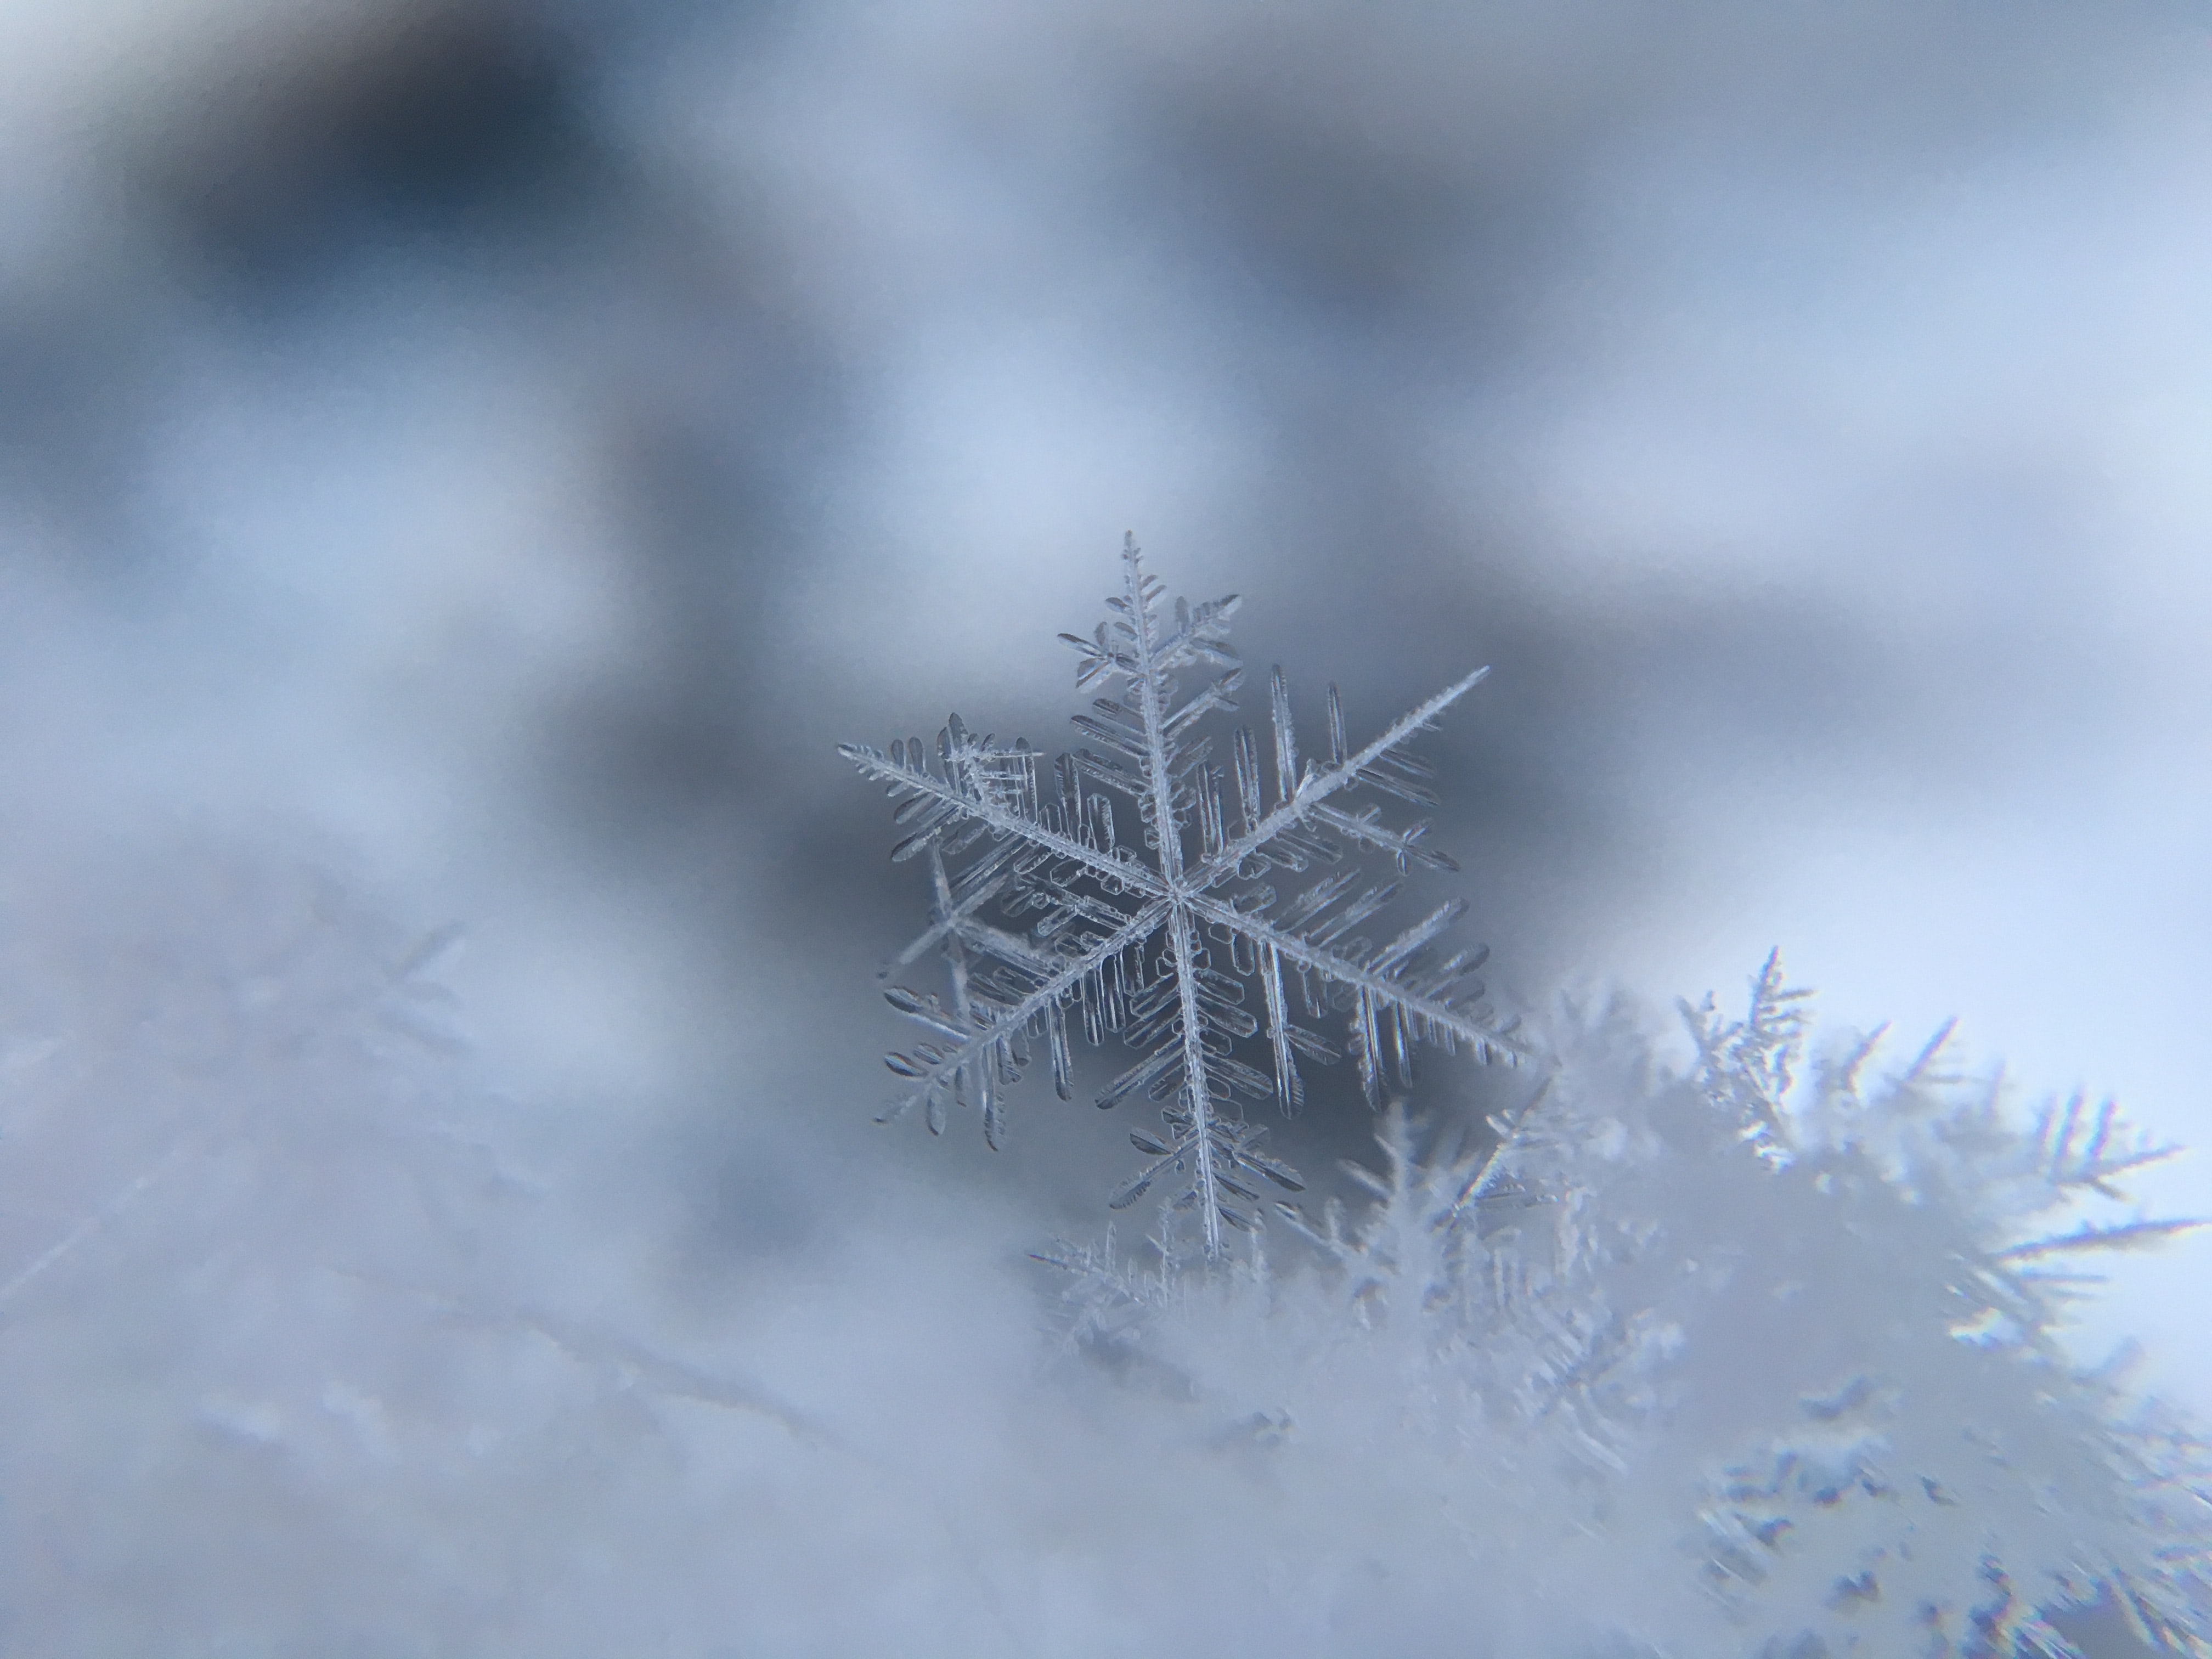 Snowflake; image by Damian McCoig, via Unsplash.com.